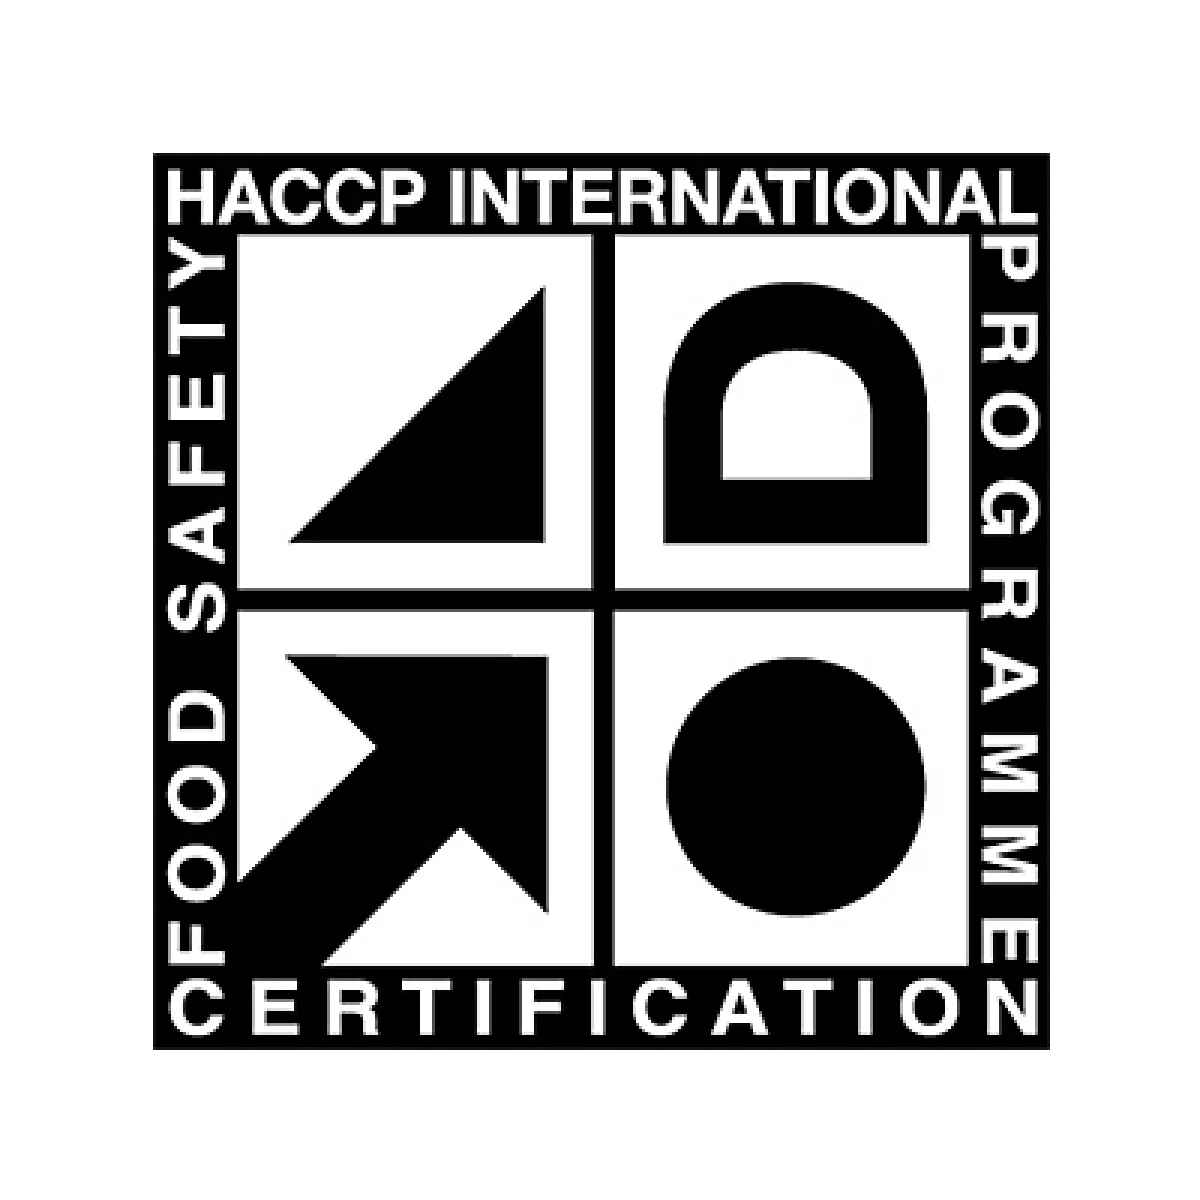 Certificado HACCP International